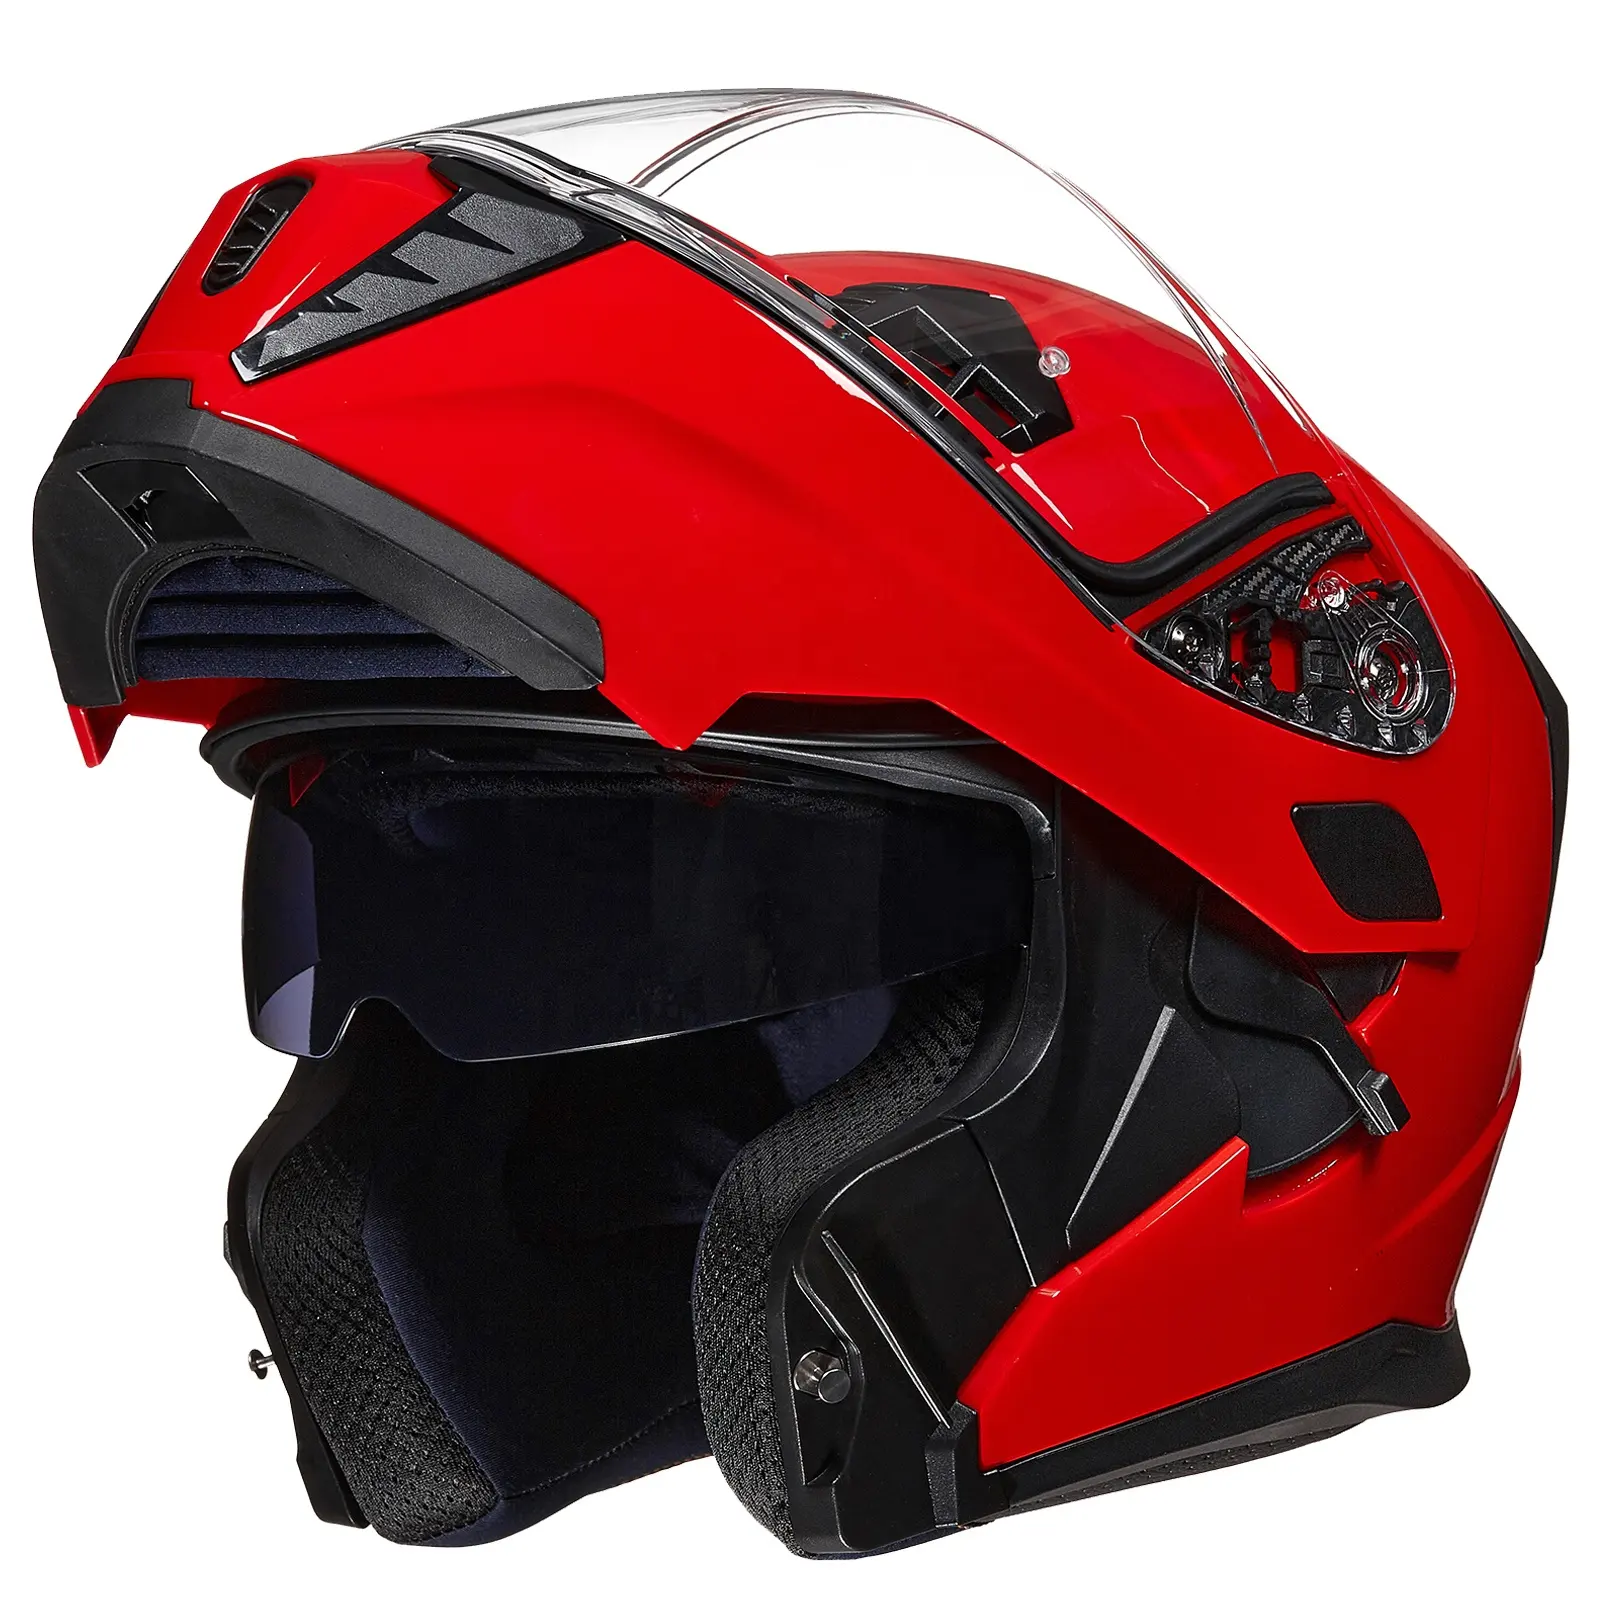 Best Selling Good Quality ILM Motorcycle Modular Full Face Helmet for Adult Flip up Dual Visor LED Tail Light Optional DOT